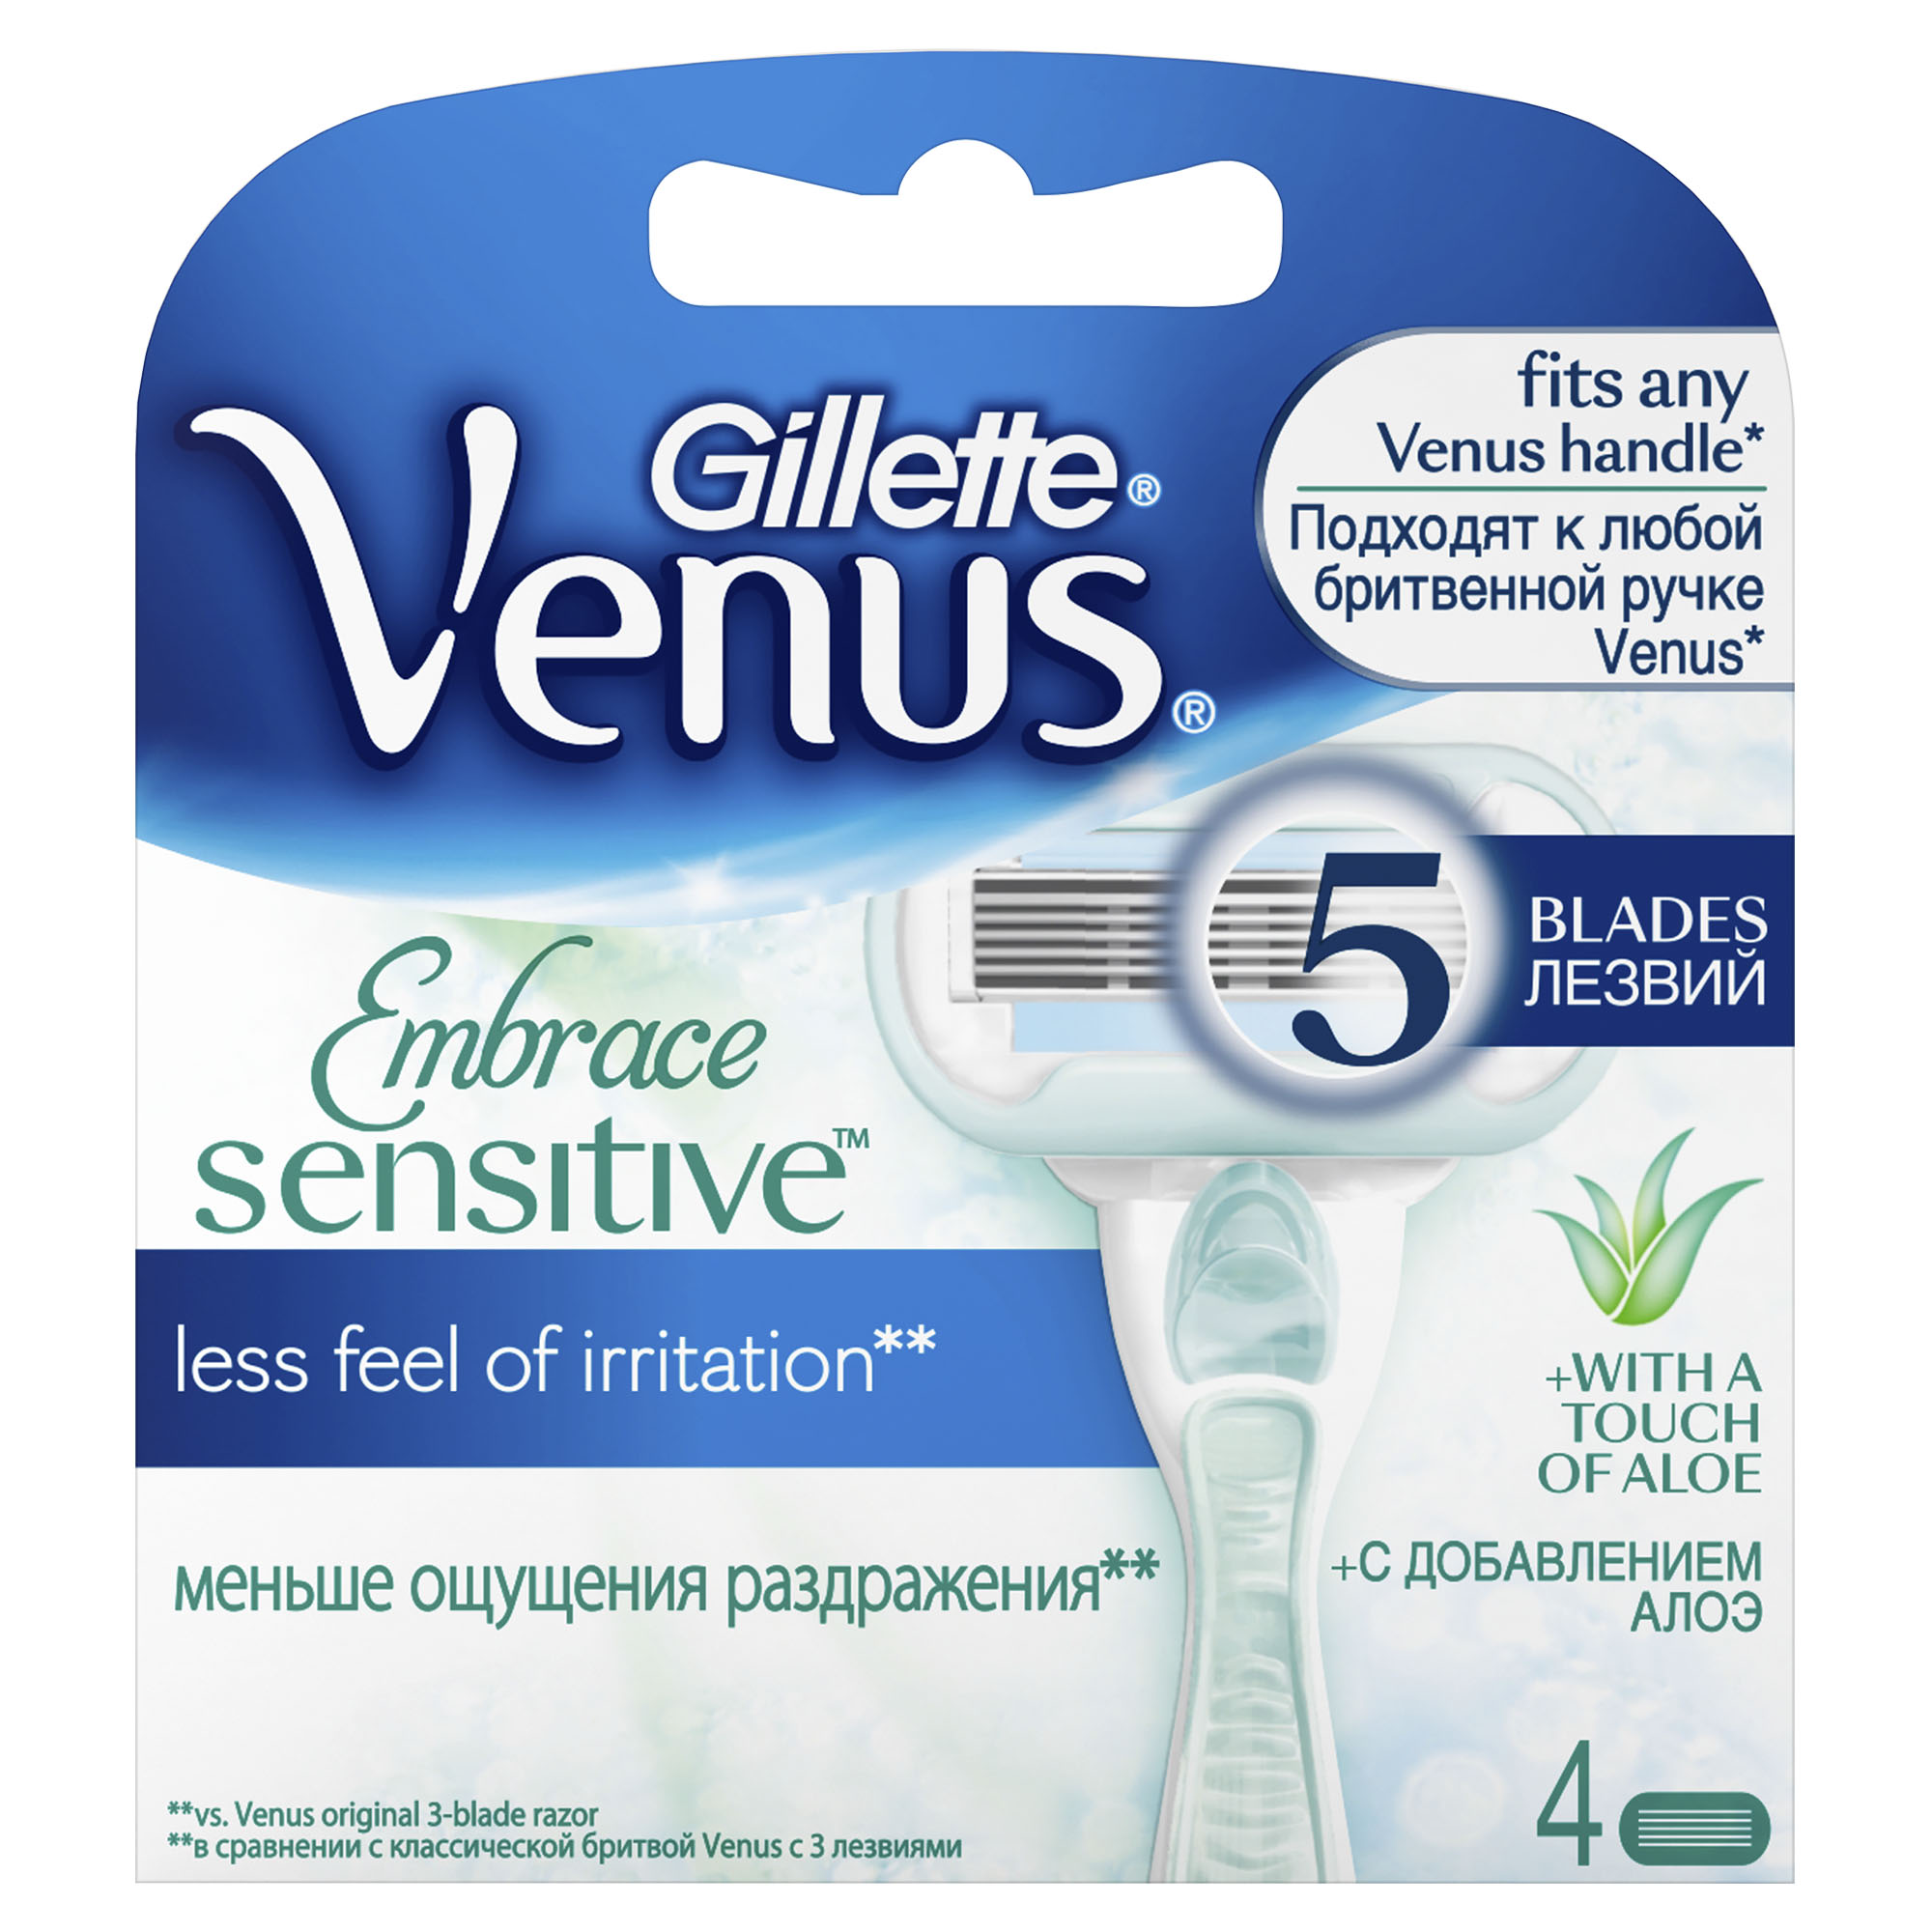 Купить Сменные кассеты для бритвы Gillette Venus Sensitive (для чувствительной кожи), 4 шт, embrace Sensitive, нержавеющая сталь, Польша